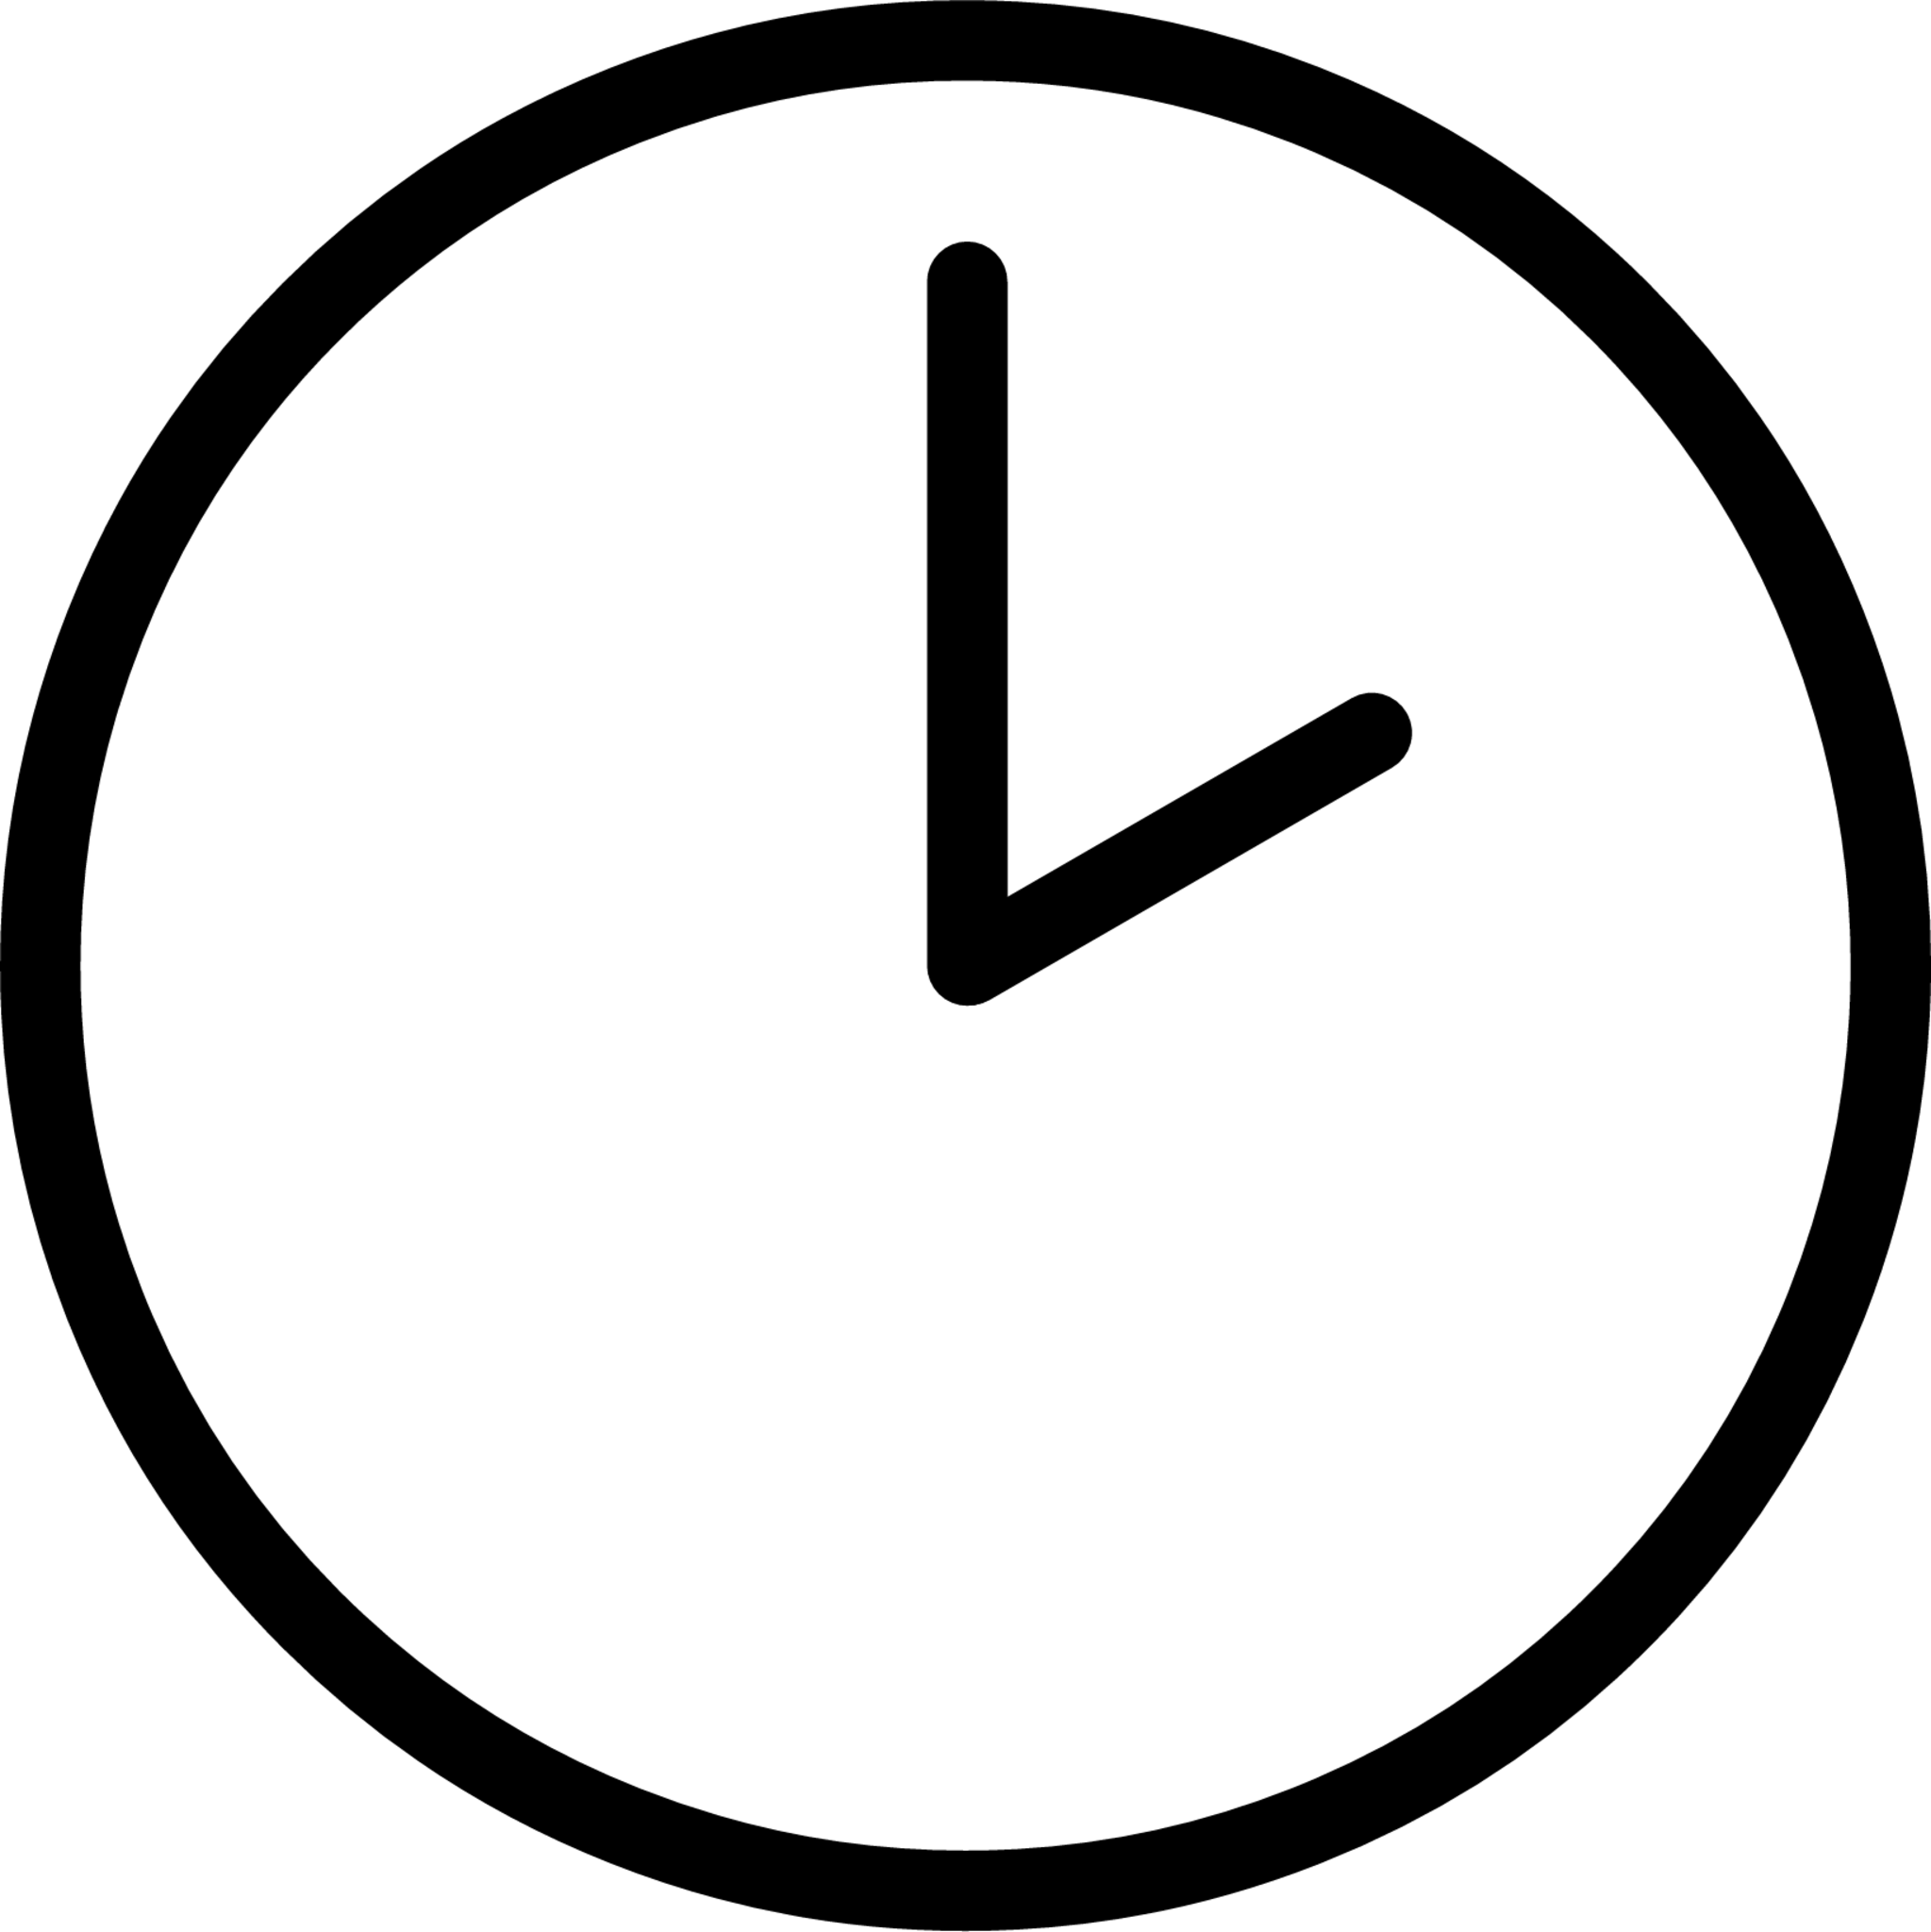 two o’clock emoji